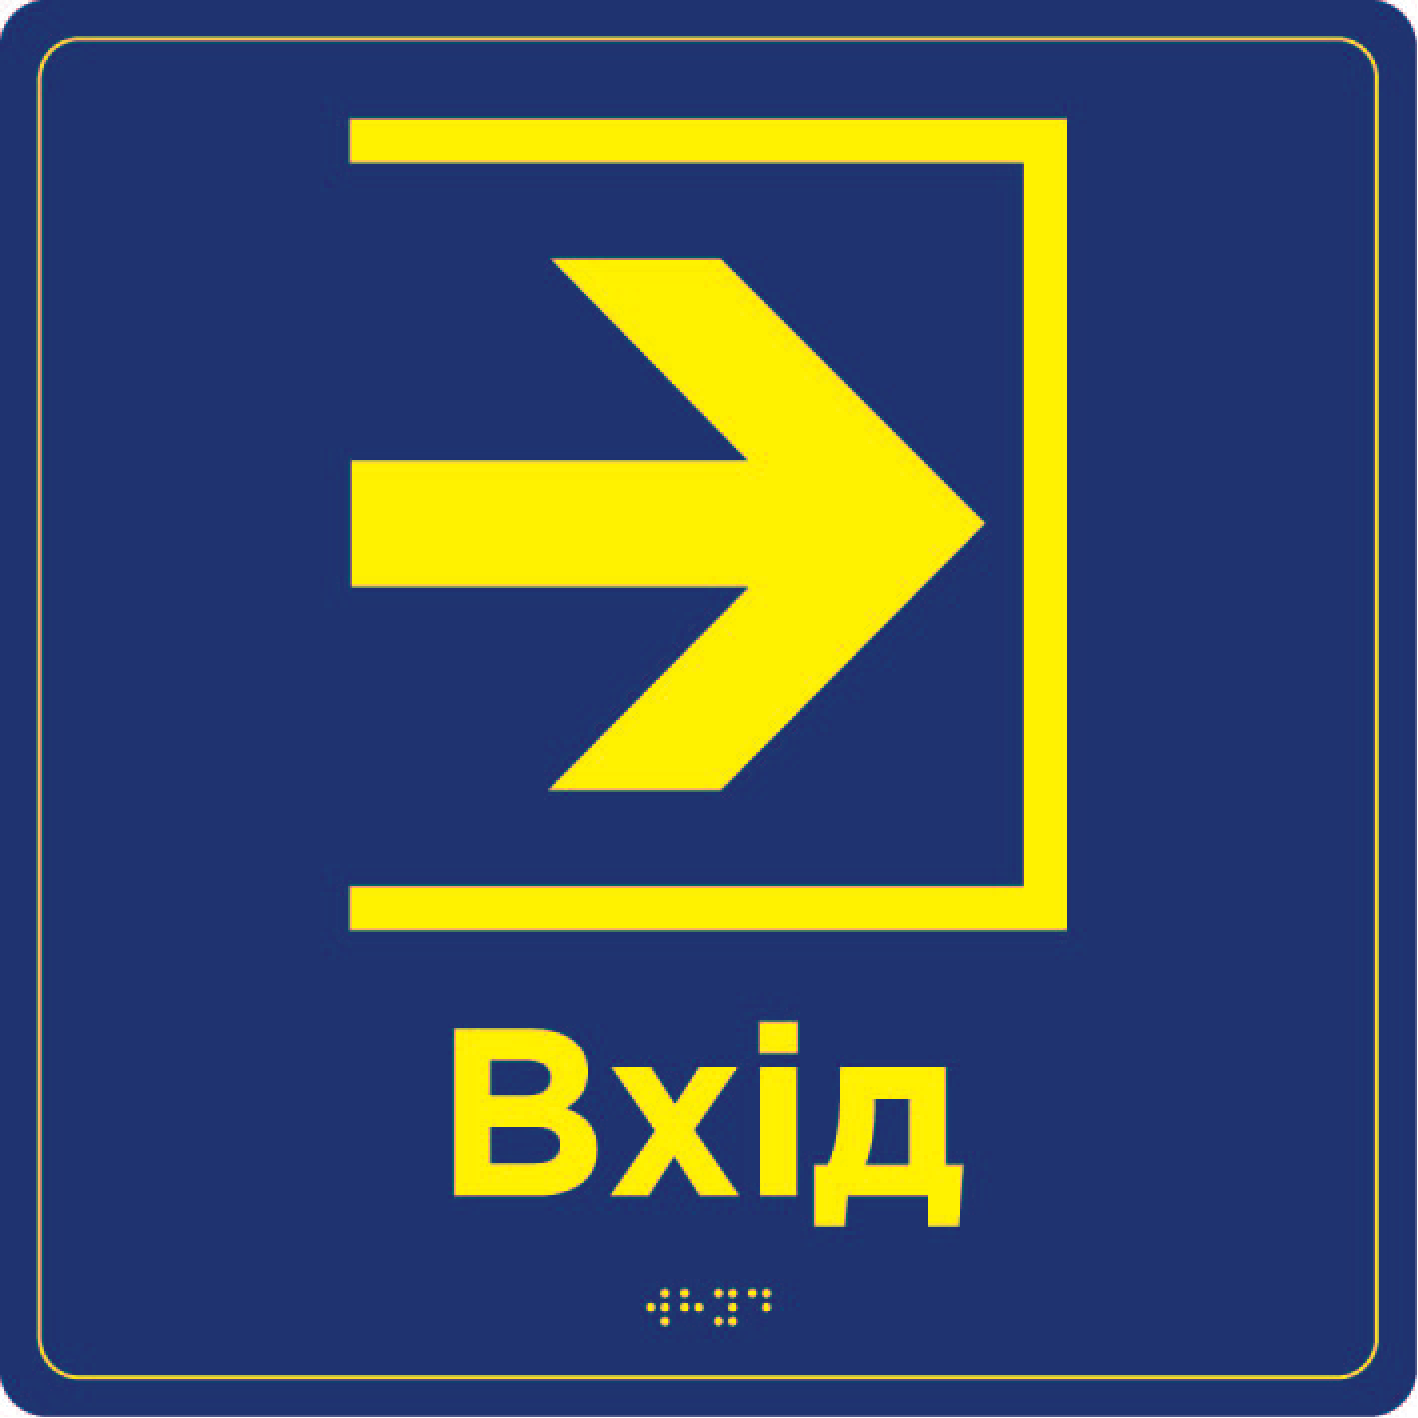 Інформаційна табличка "Вхід" зі шрифтом Брайля , навігаційна табличкатшрифтом Брайля "Вхід"